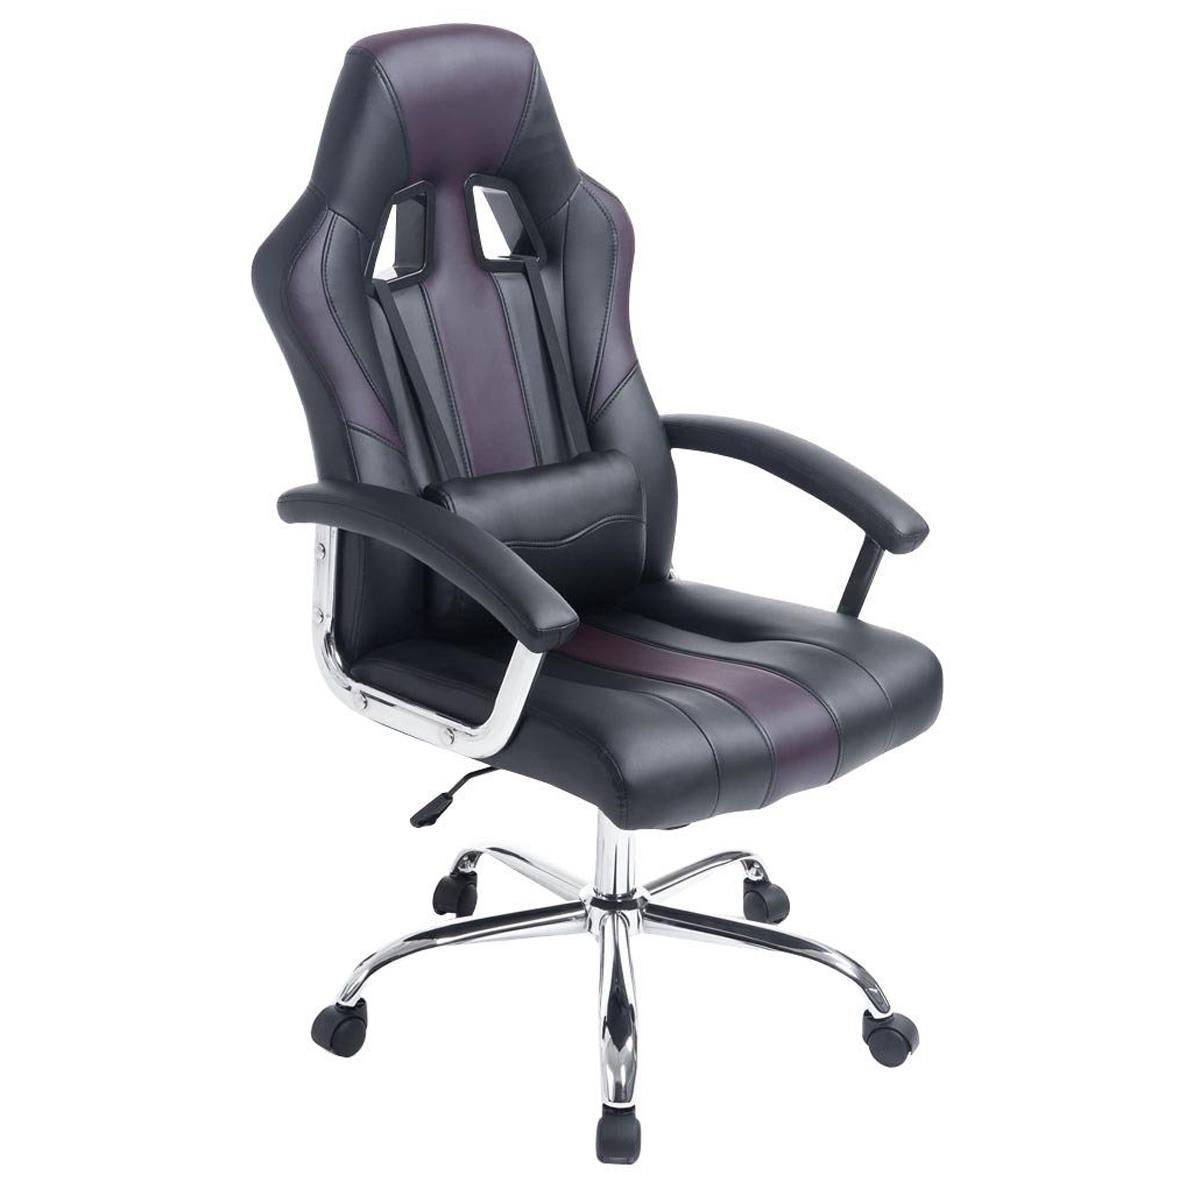 Gaming-Stuhl INDOS, sportliches Design, hoher Komfort, Metallfußkreuz, Lederbezug, Farbe Schwarz / Braun